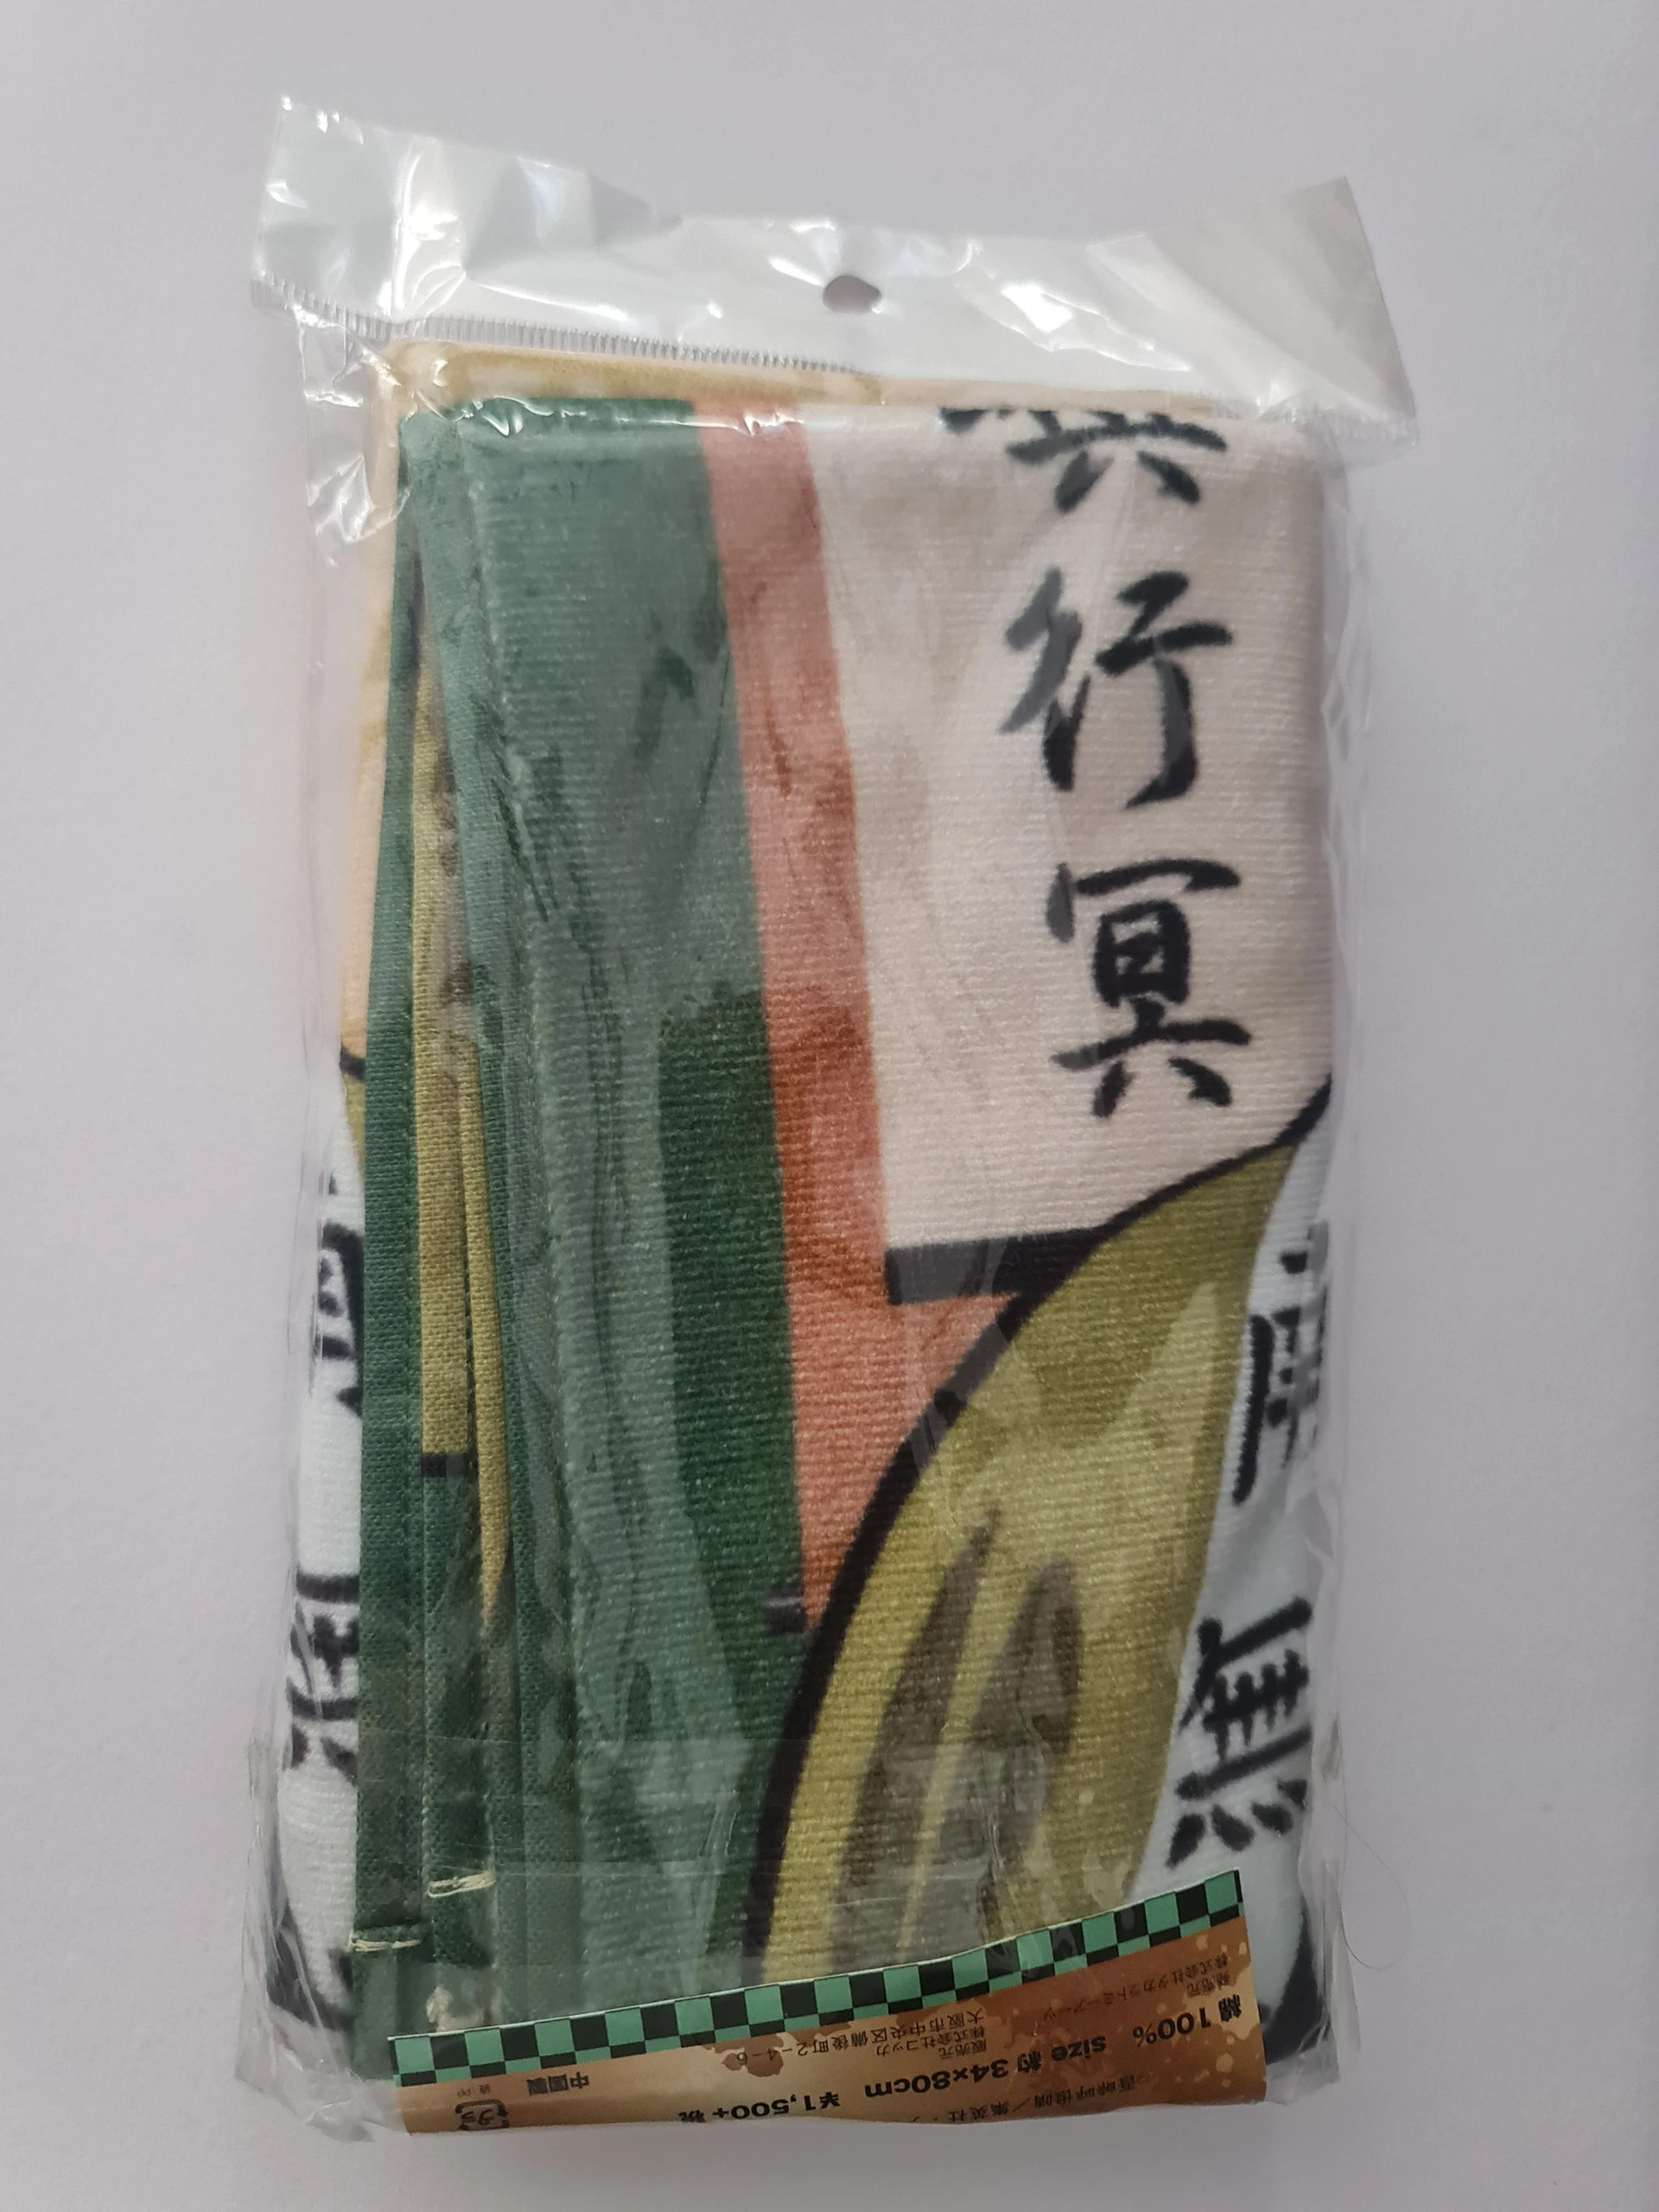 Gyomei Himejima Ręcznik Towel Kimetsu no Yaiba